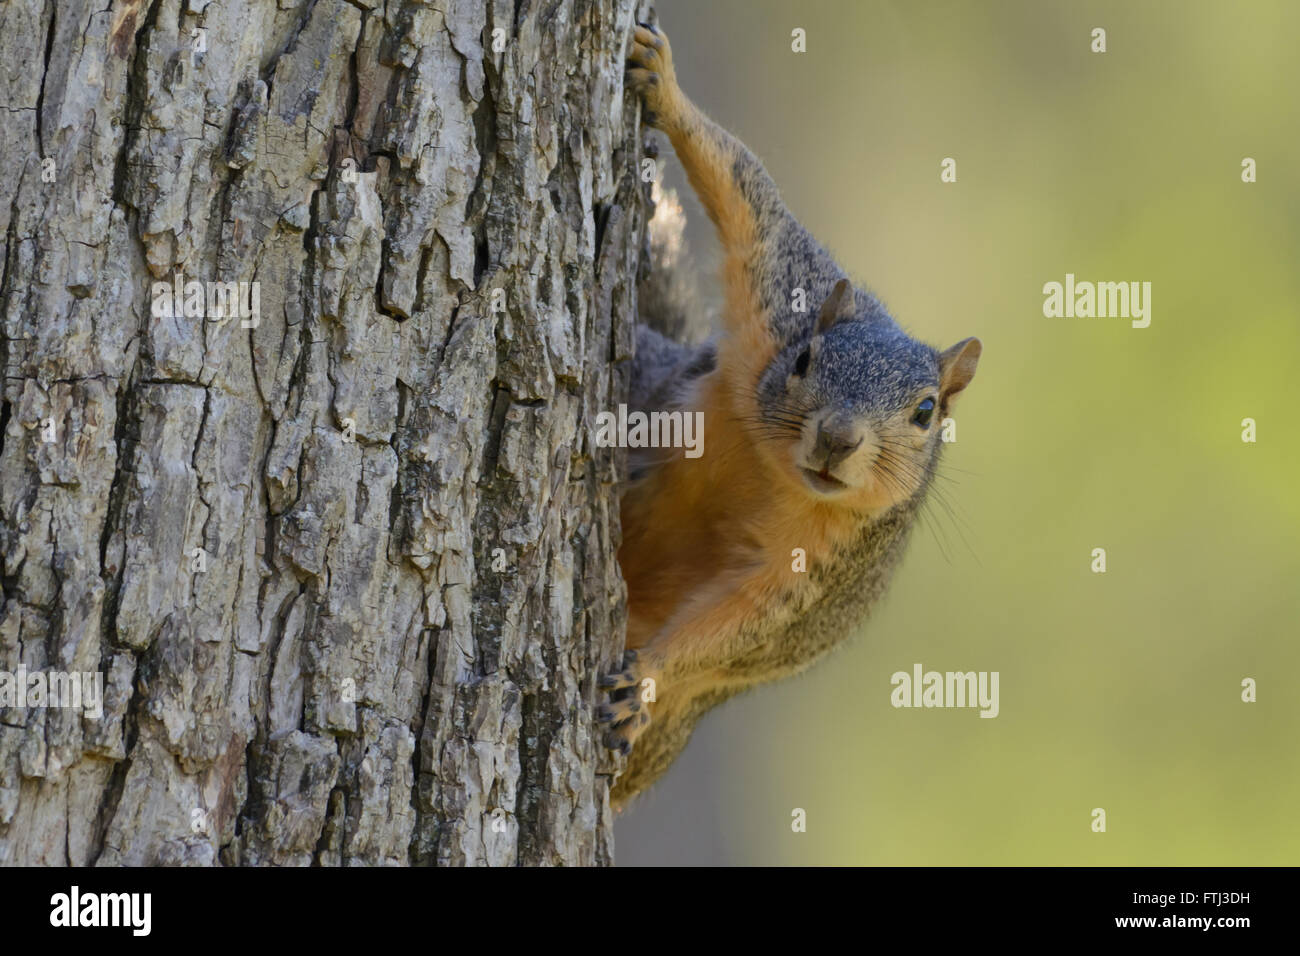 Fuchs, Eichhörnchen hängen auf der Baum suchen direkt nach vorne. Grünen Hintergrund. Selektiven Fokus. Humor. Landschaft-Beschriftung Stockfoto